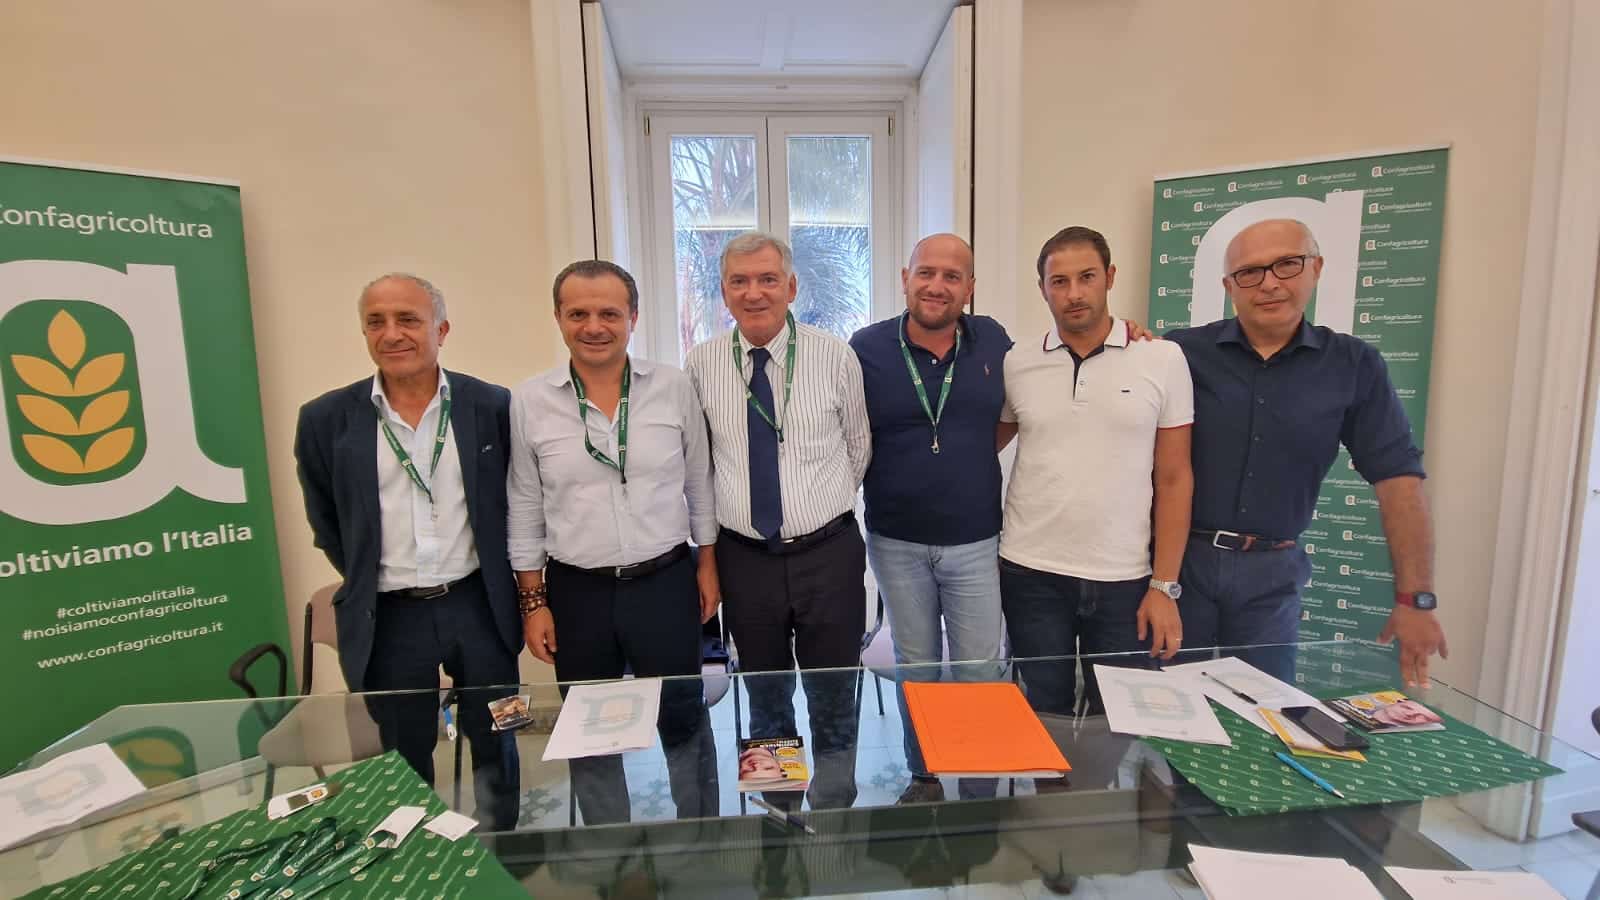 Regionali, De Luca incontra i vertici Cia e Confagricoltura a Catania